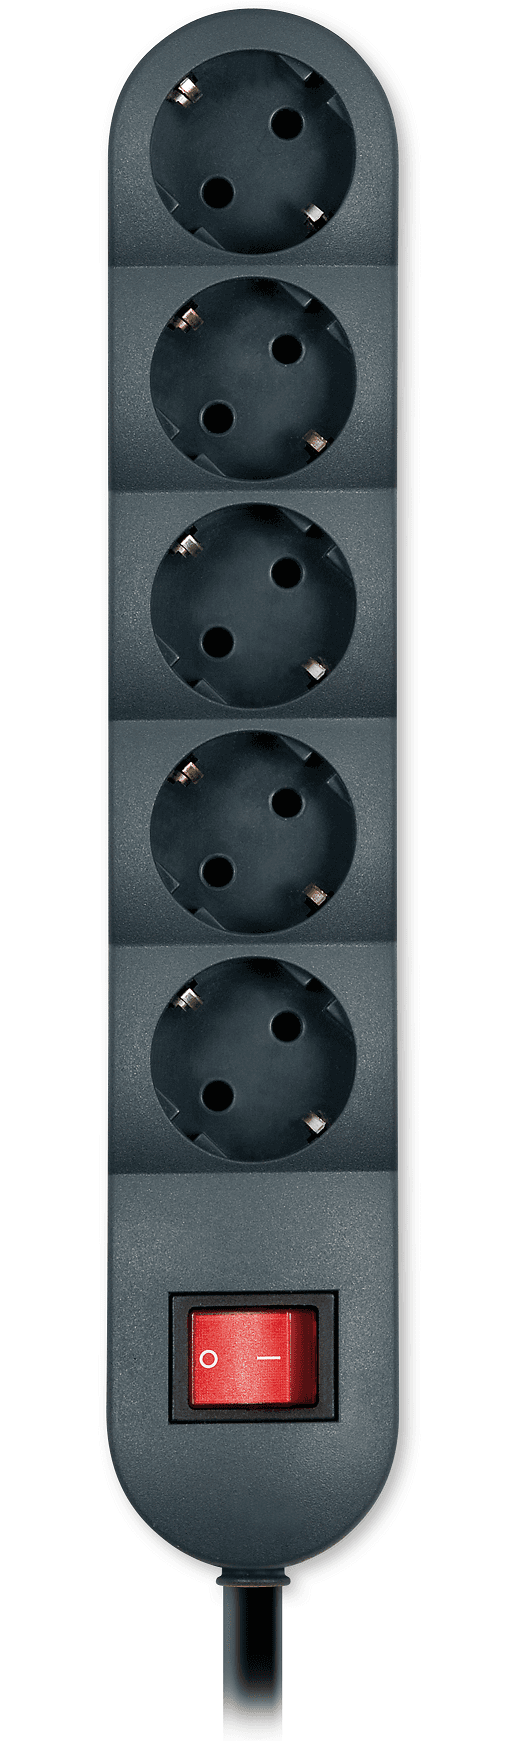 Selected image for ALING-CONEL Produžni kabl sa sklopkom i prenaponskom zaštitom, 5 utičnica, 1,5 m